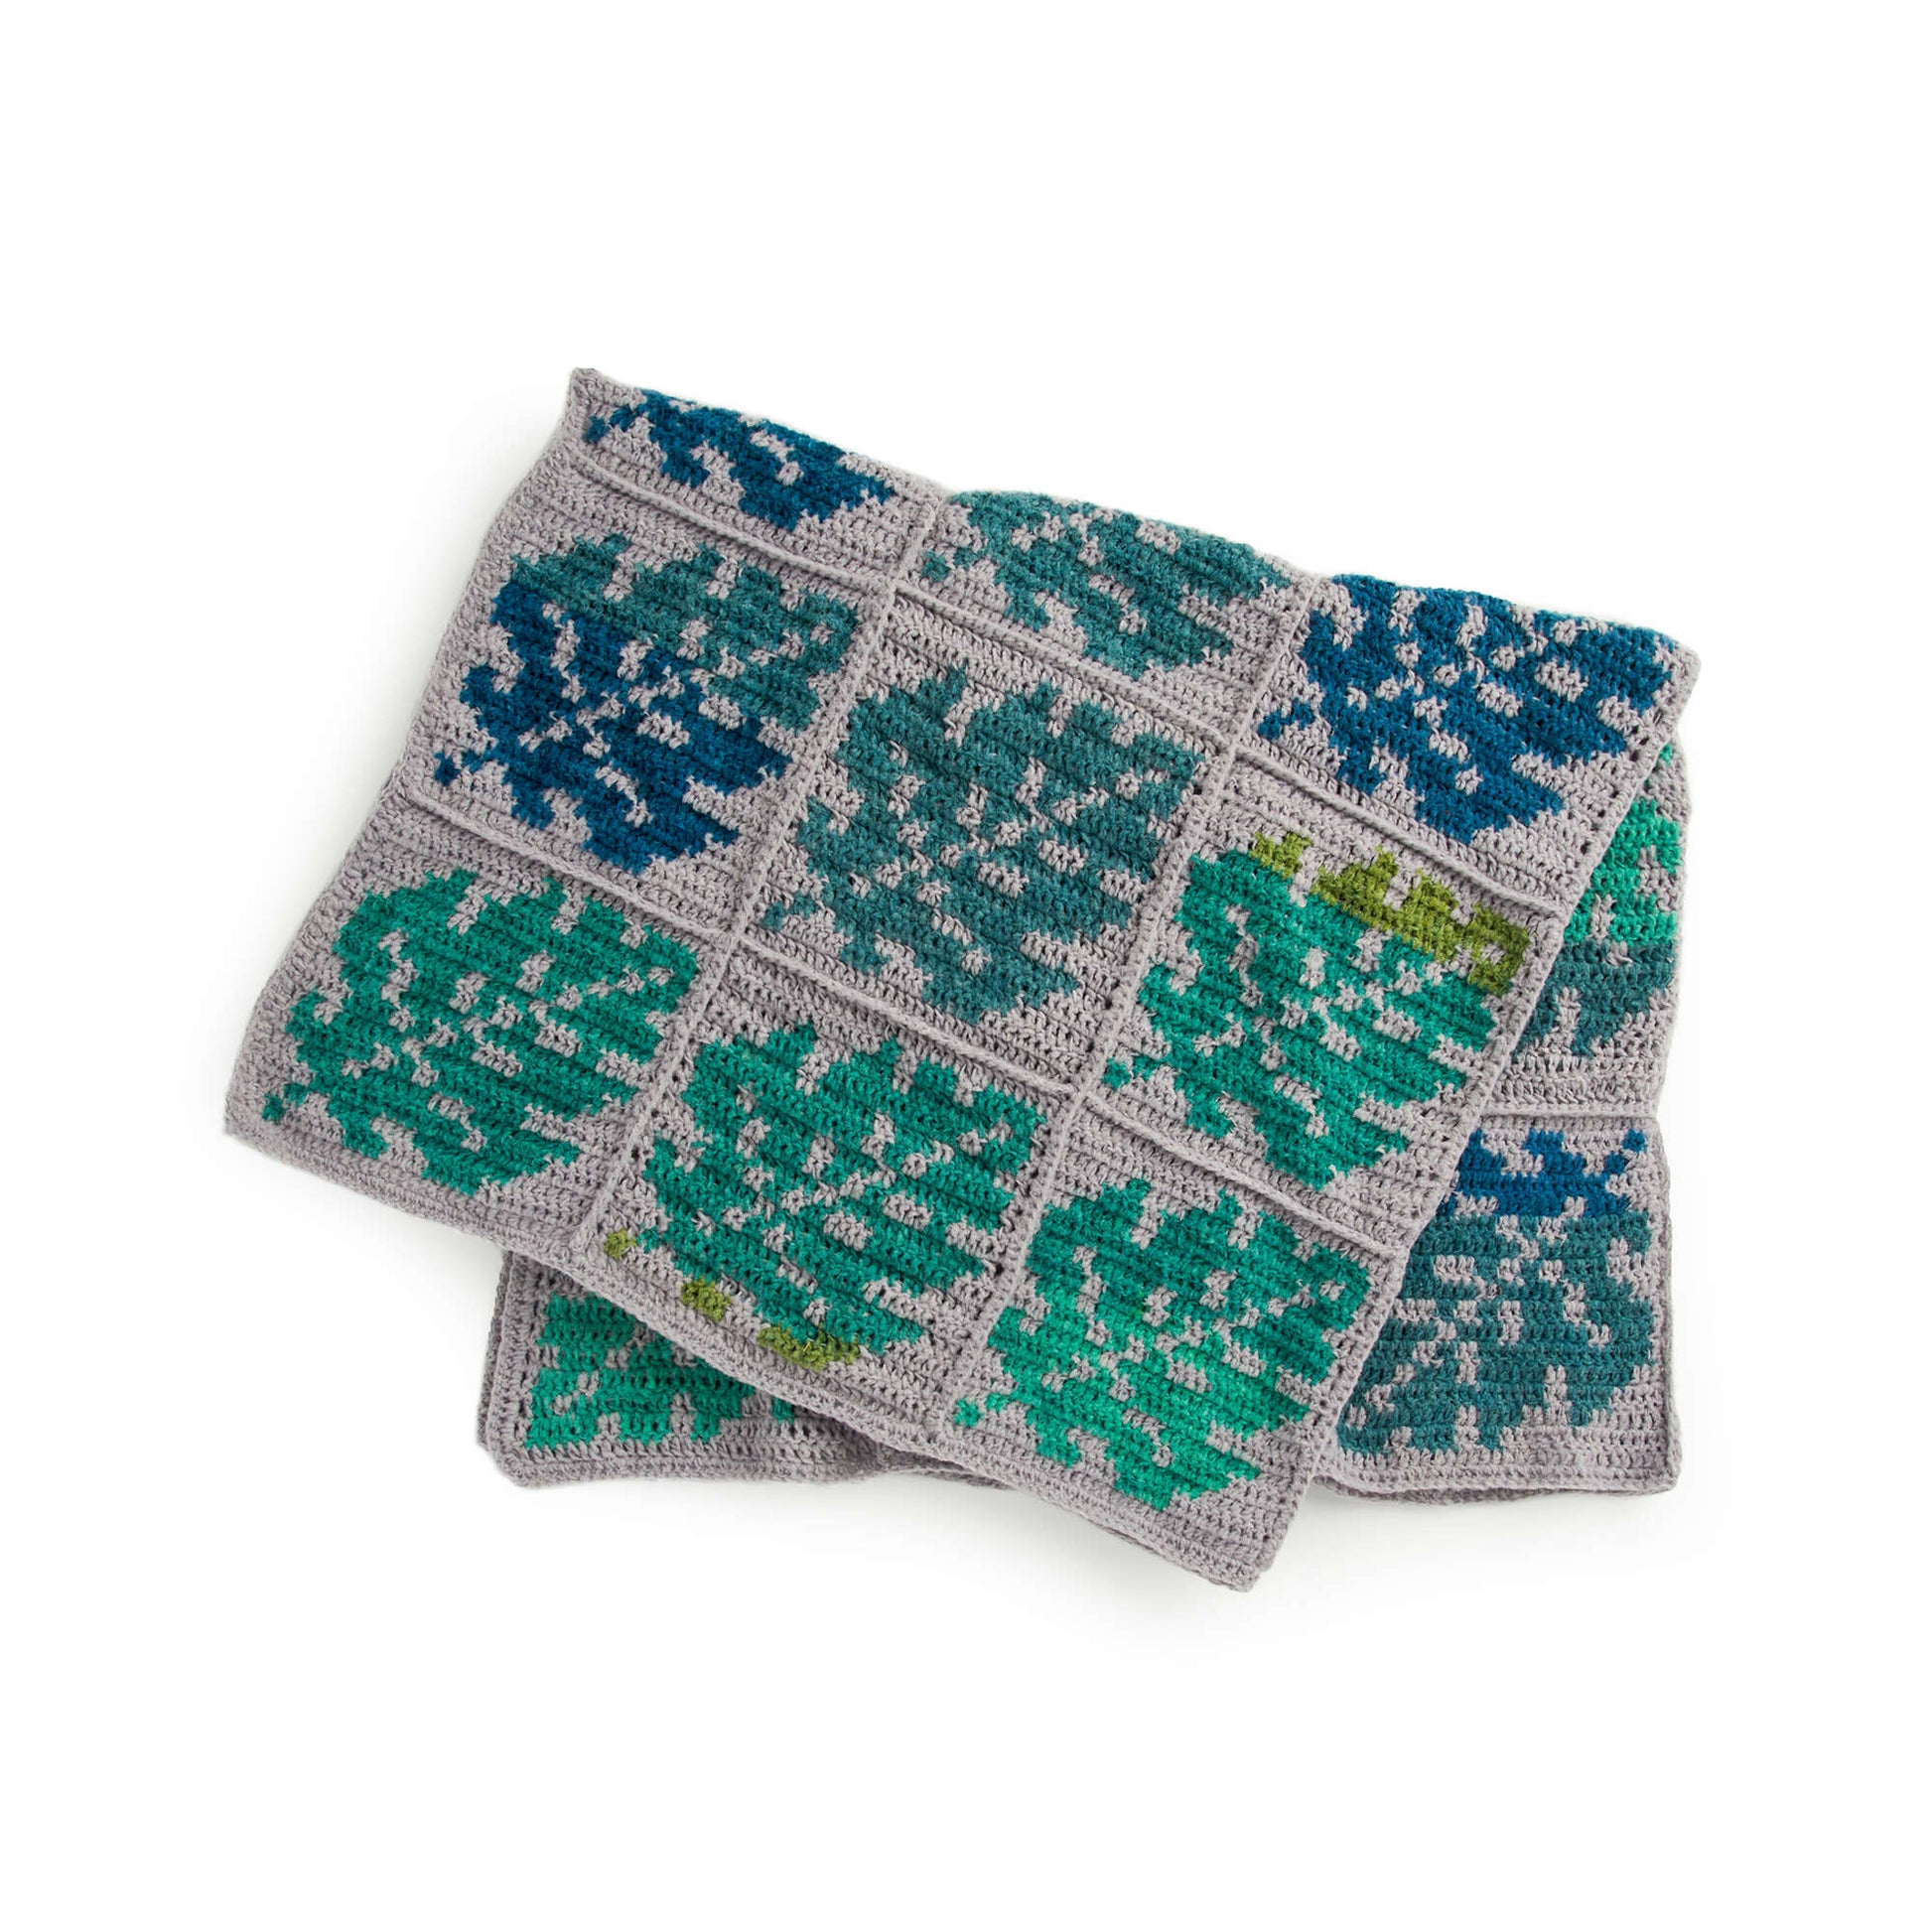 Free Caron Leafy Greens Crochet Blanket Pattern